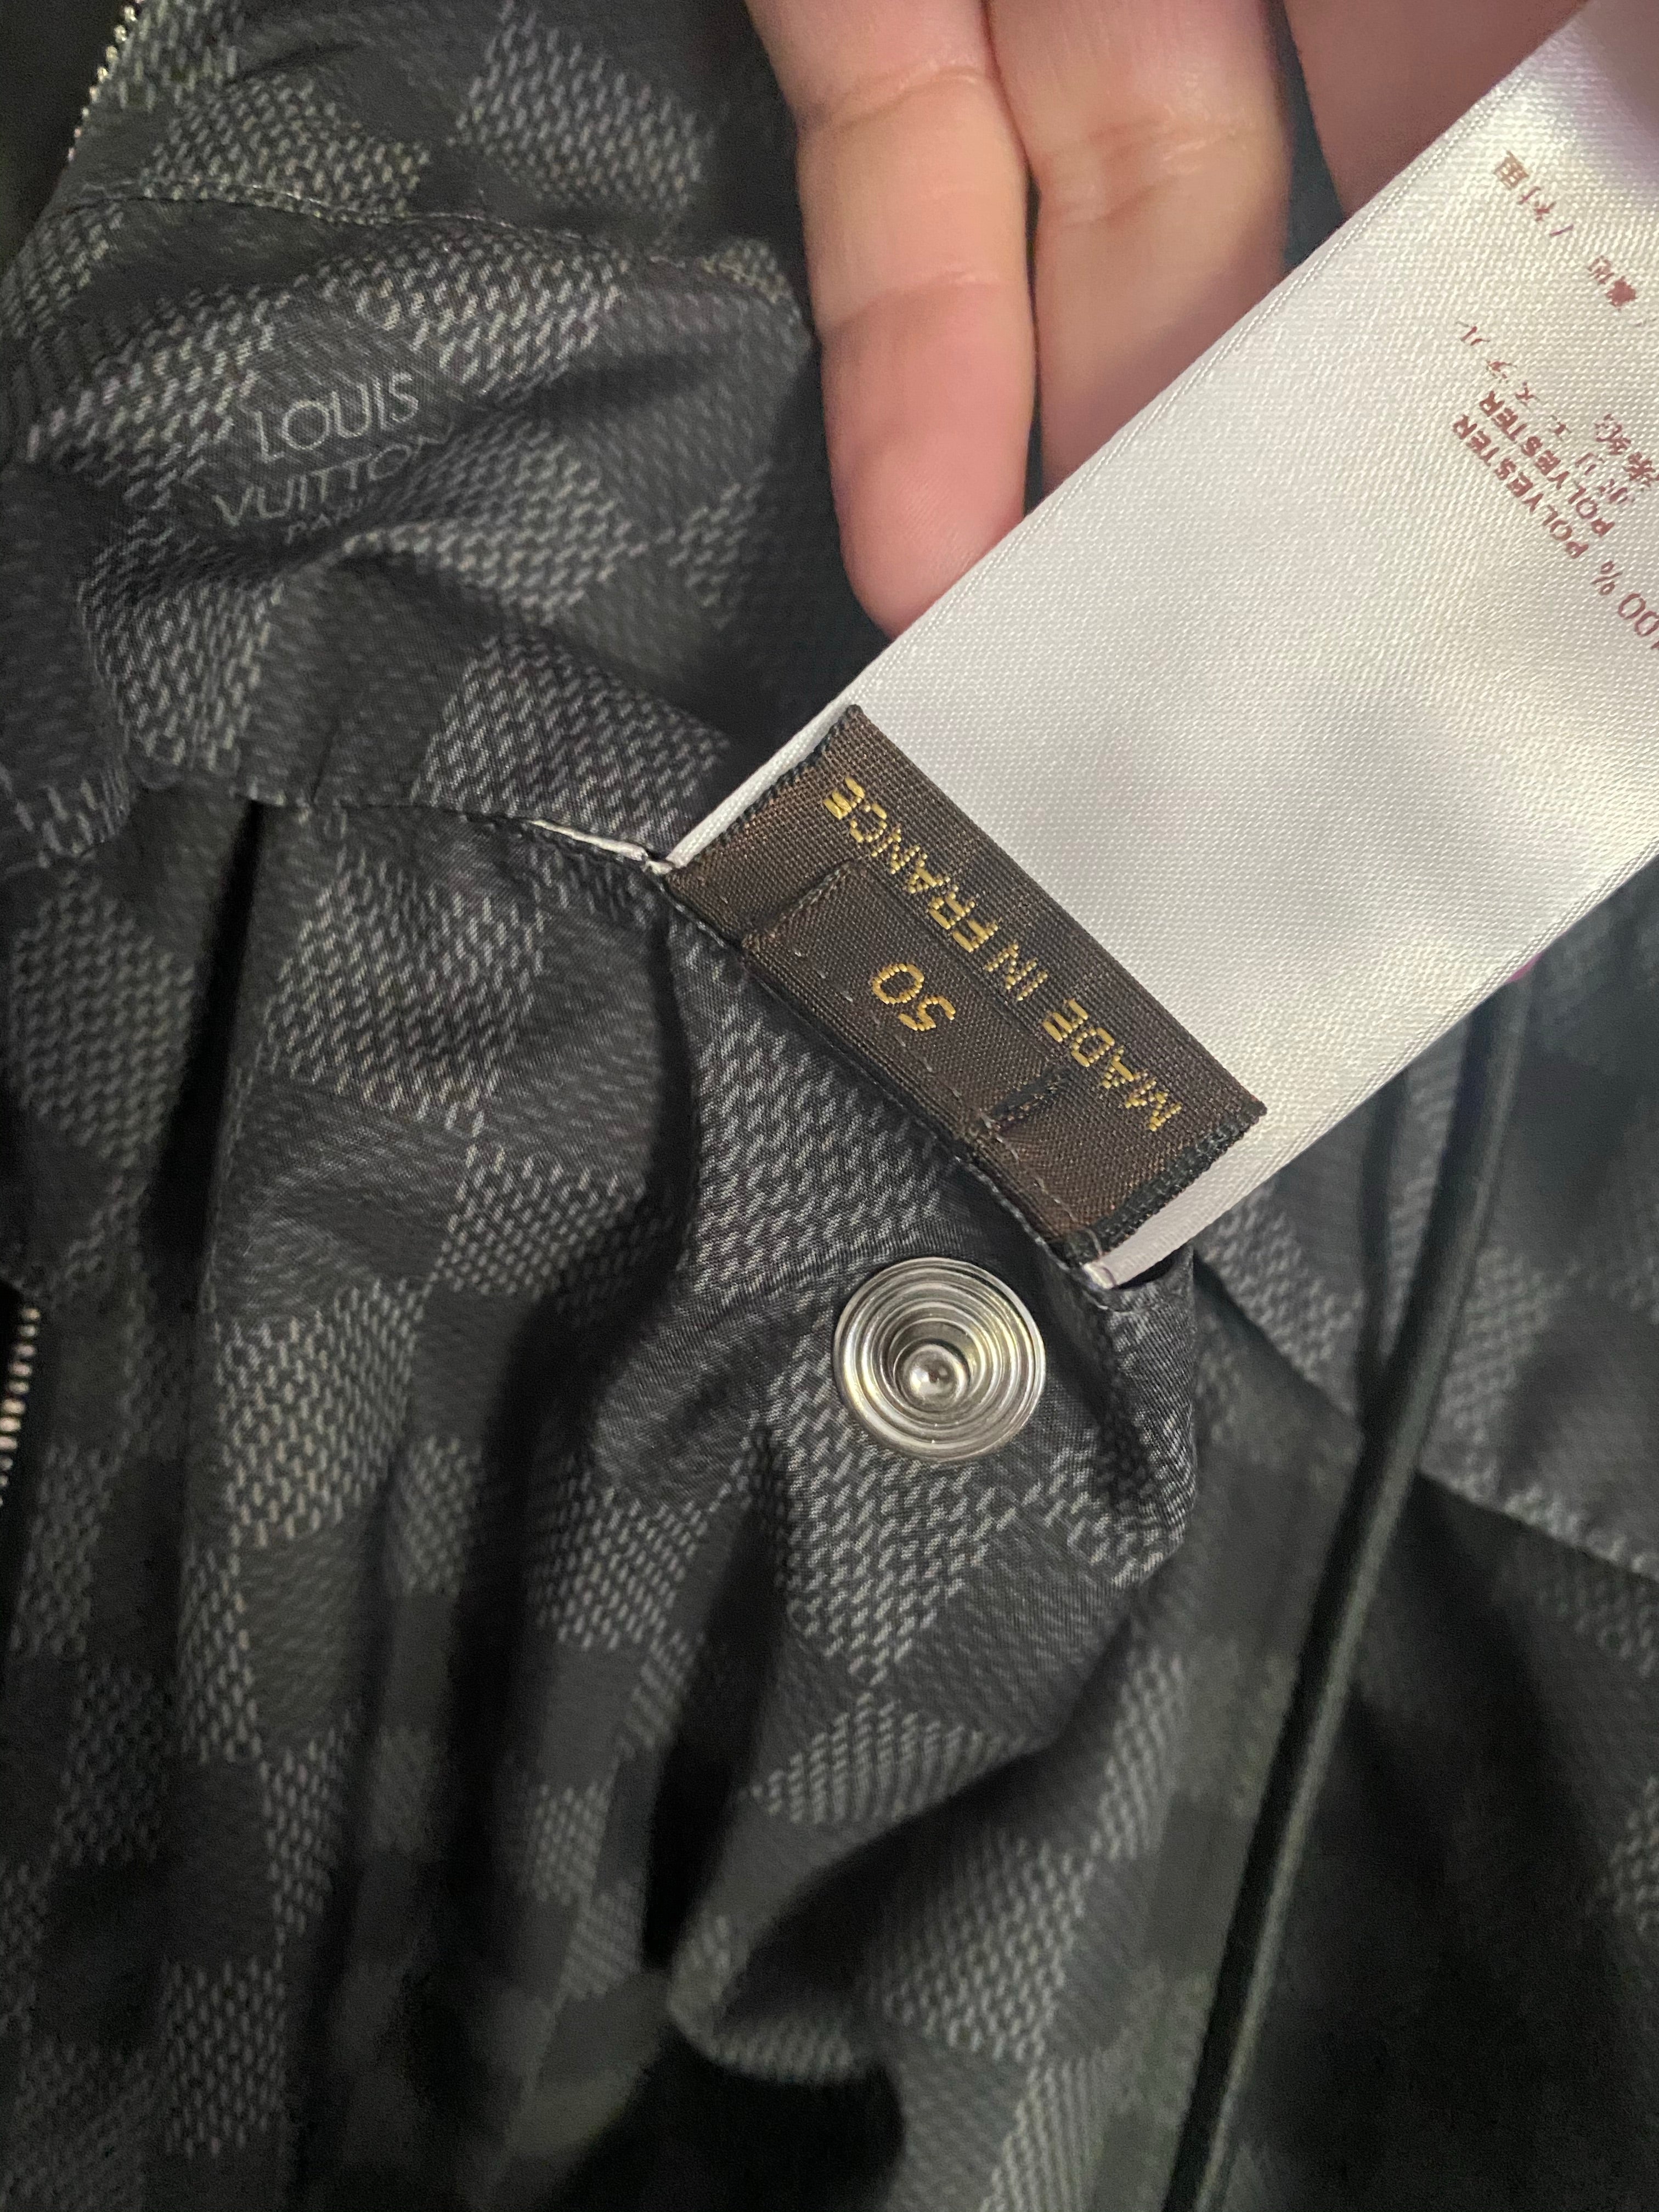 Louis Vuitton Men's Authenticated Shirt